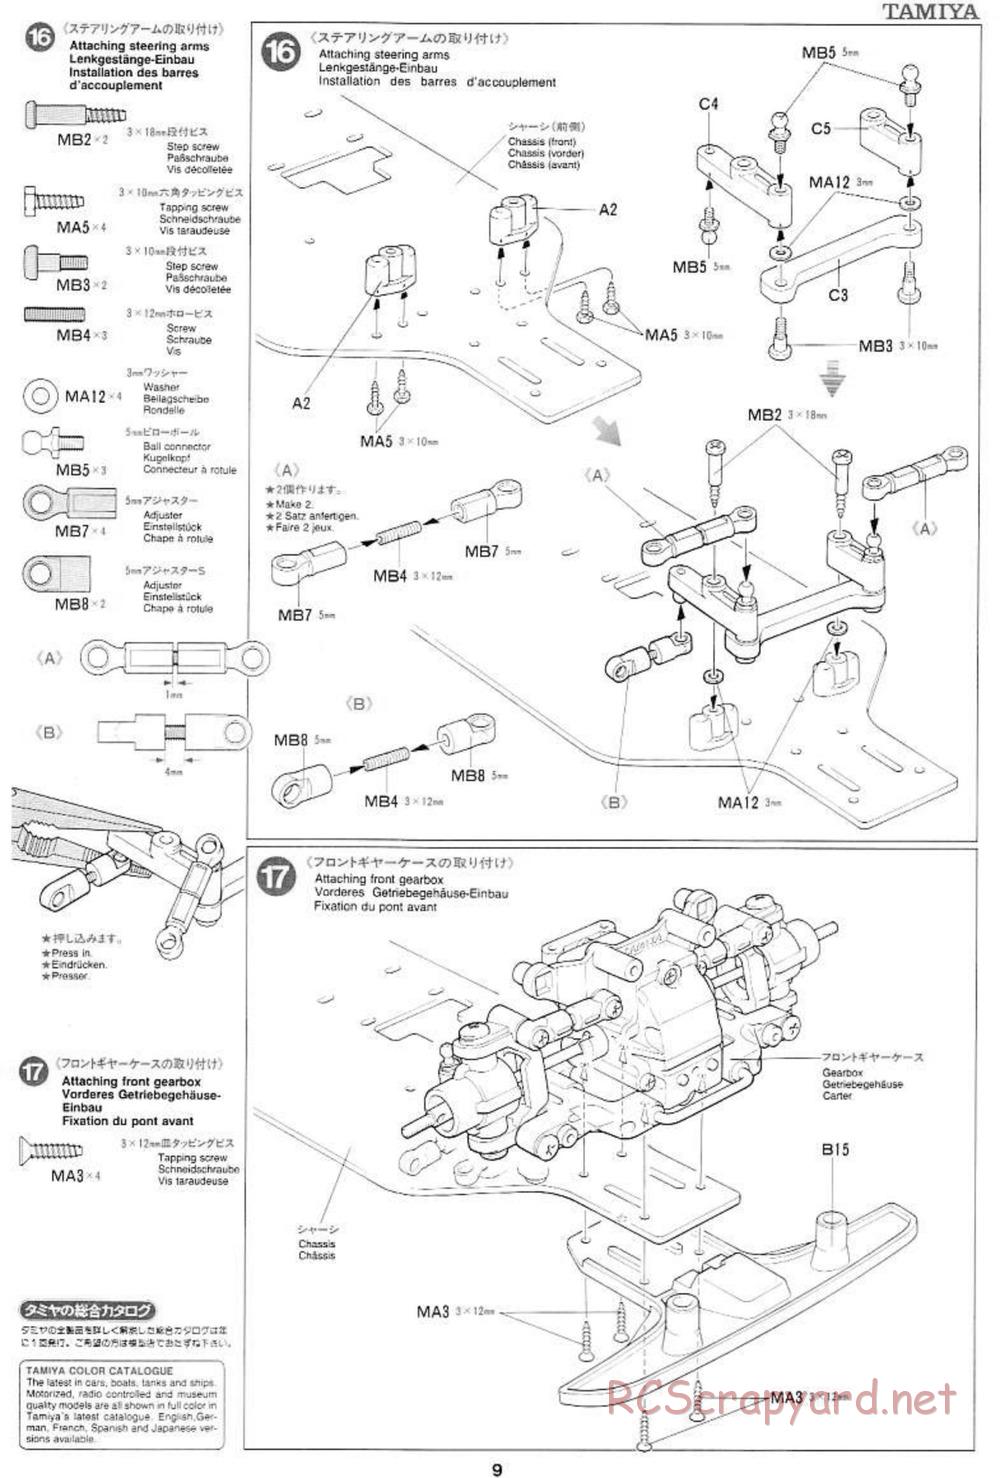 Tamiya - Mercedes CLK GTR Team Sportswear - TG10 Mk.1 Chassis - Manual - Page 9